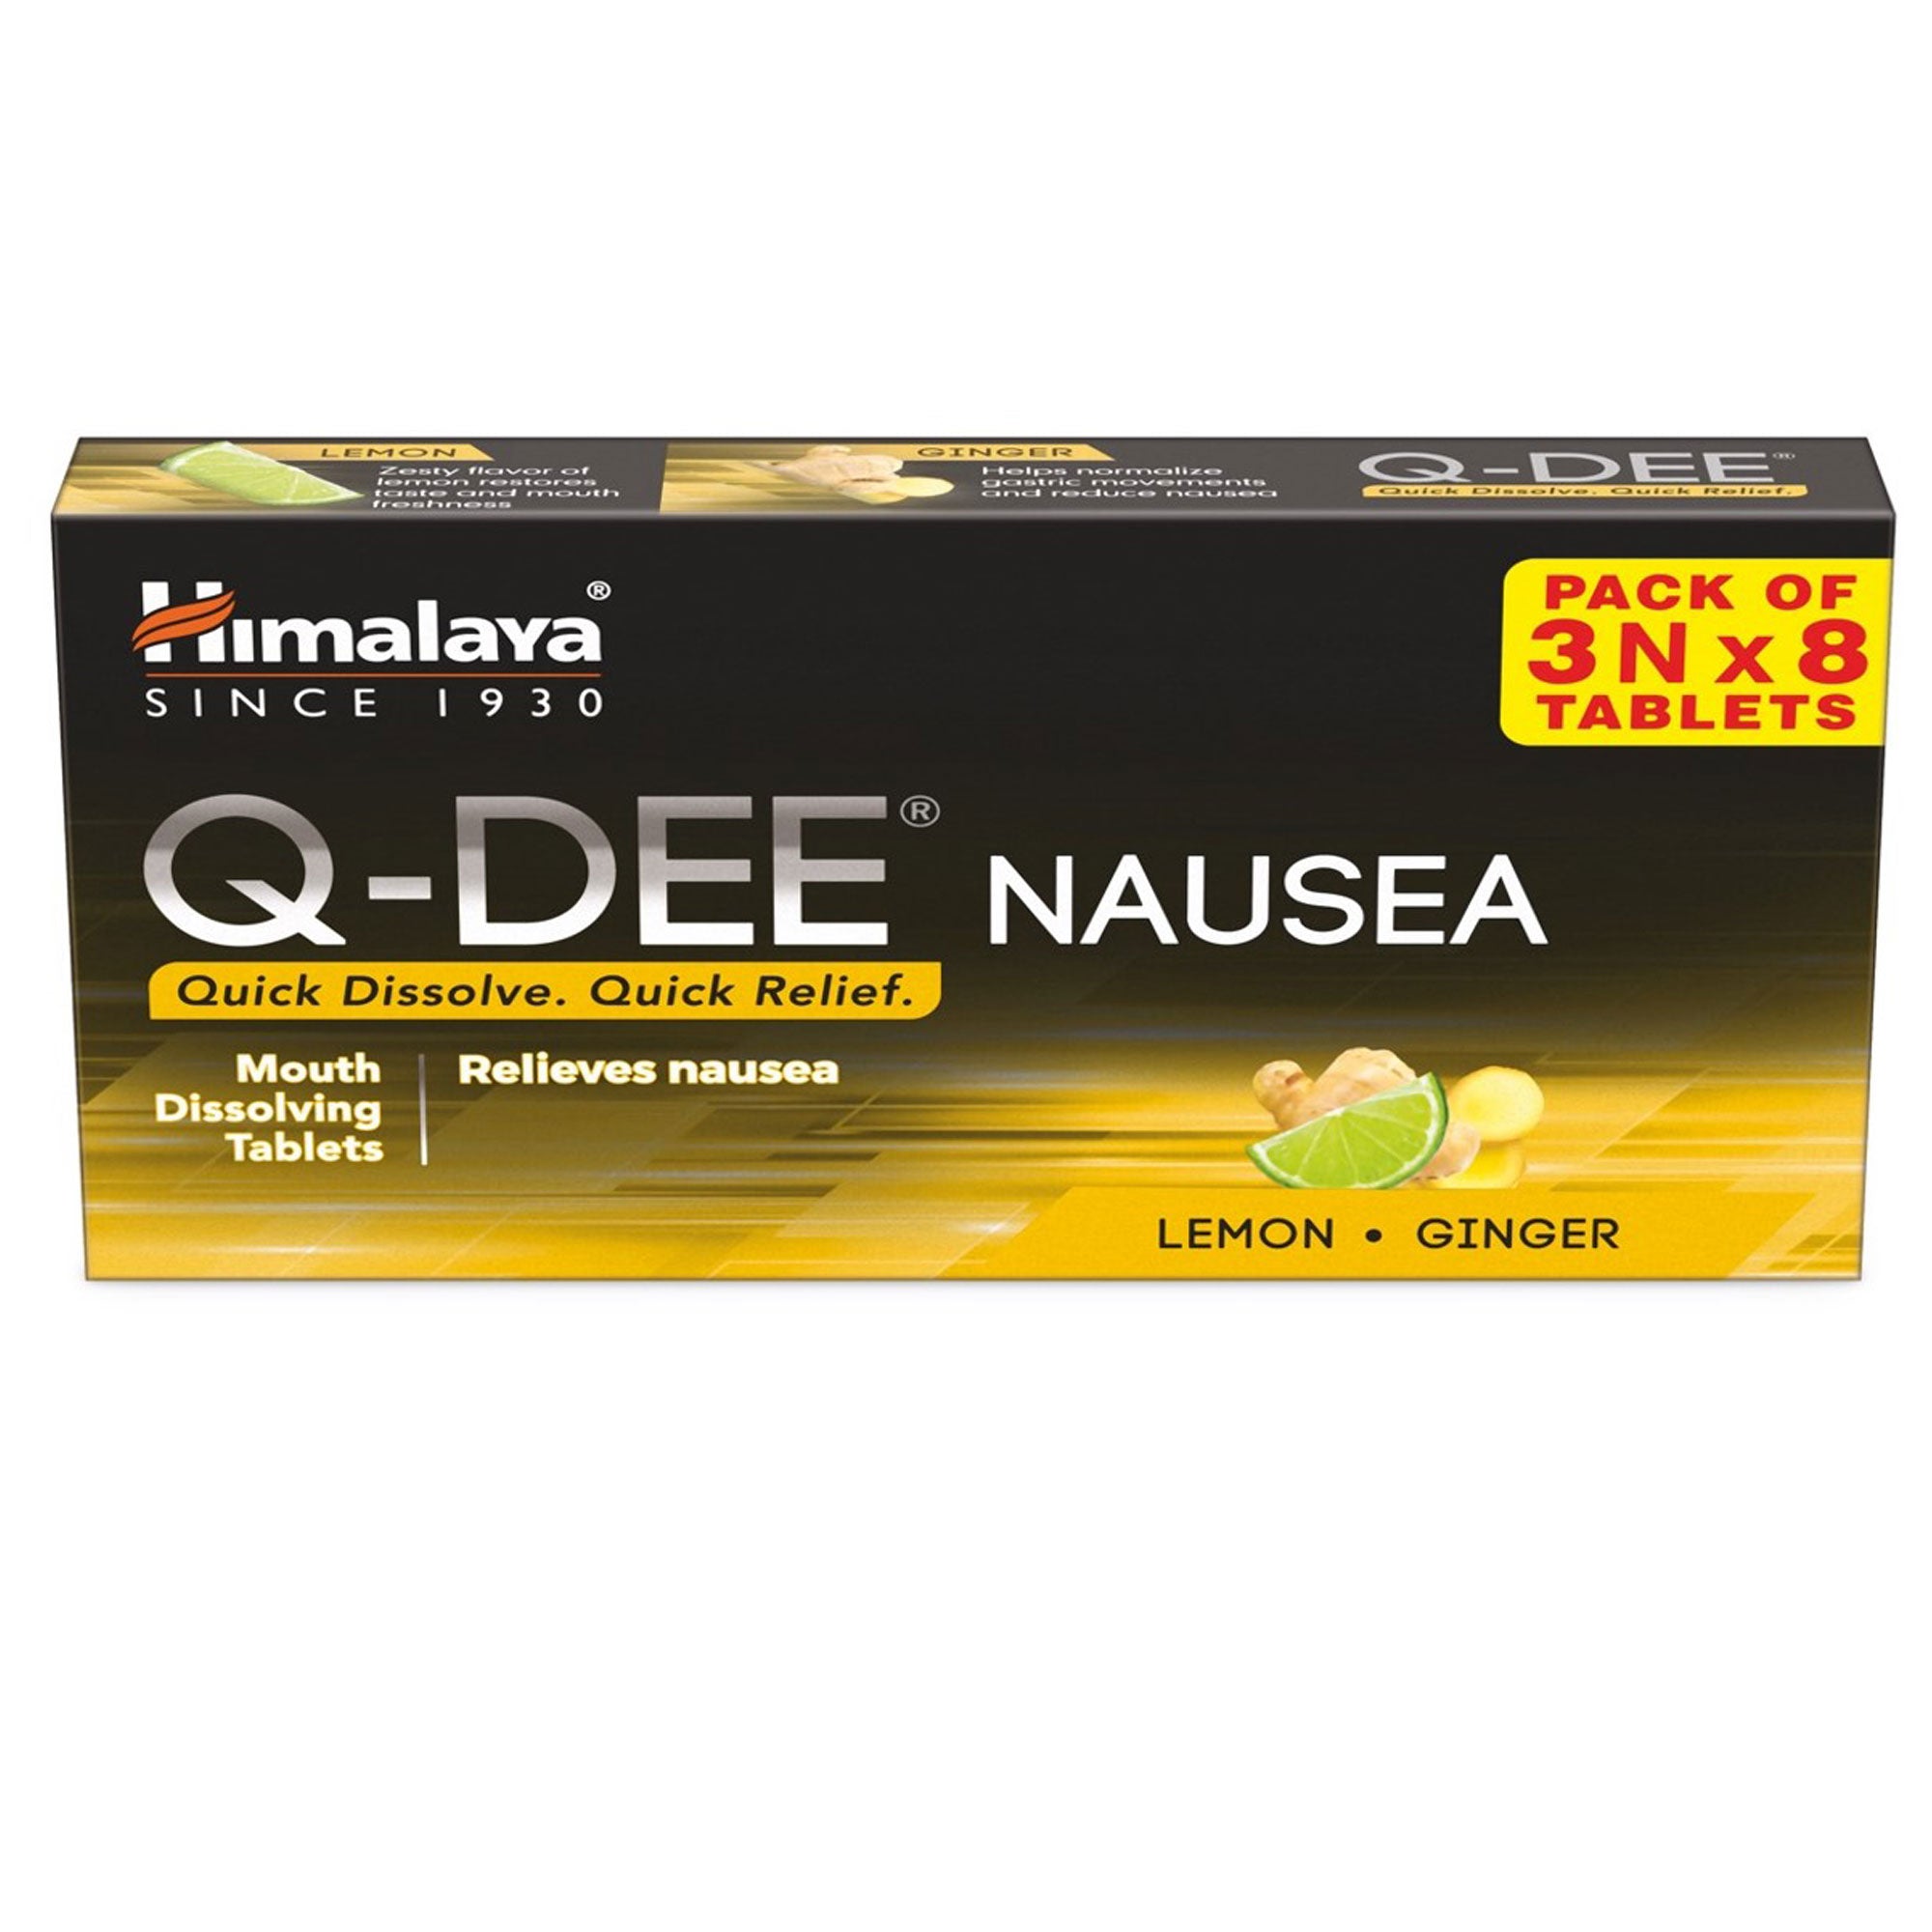 Himalaya Q-DEE Nausea Tablets - 3Nx8